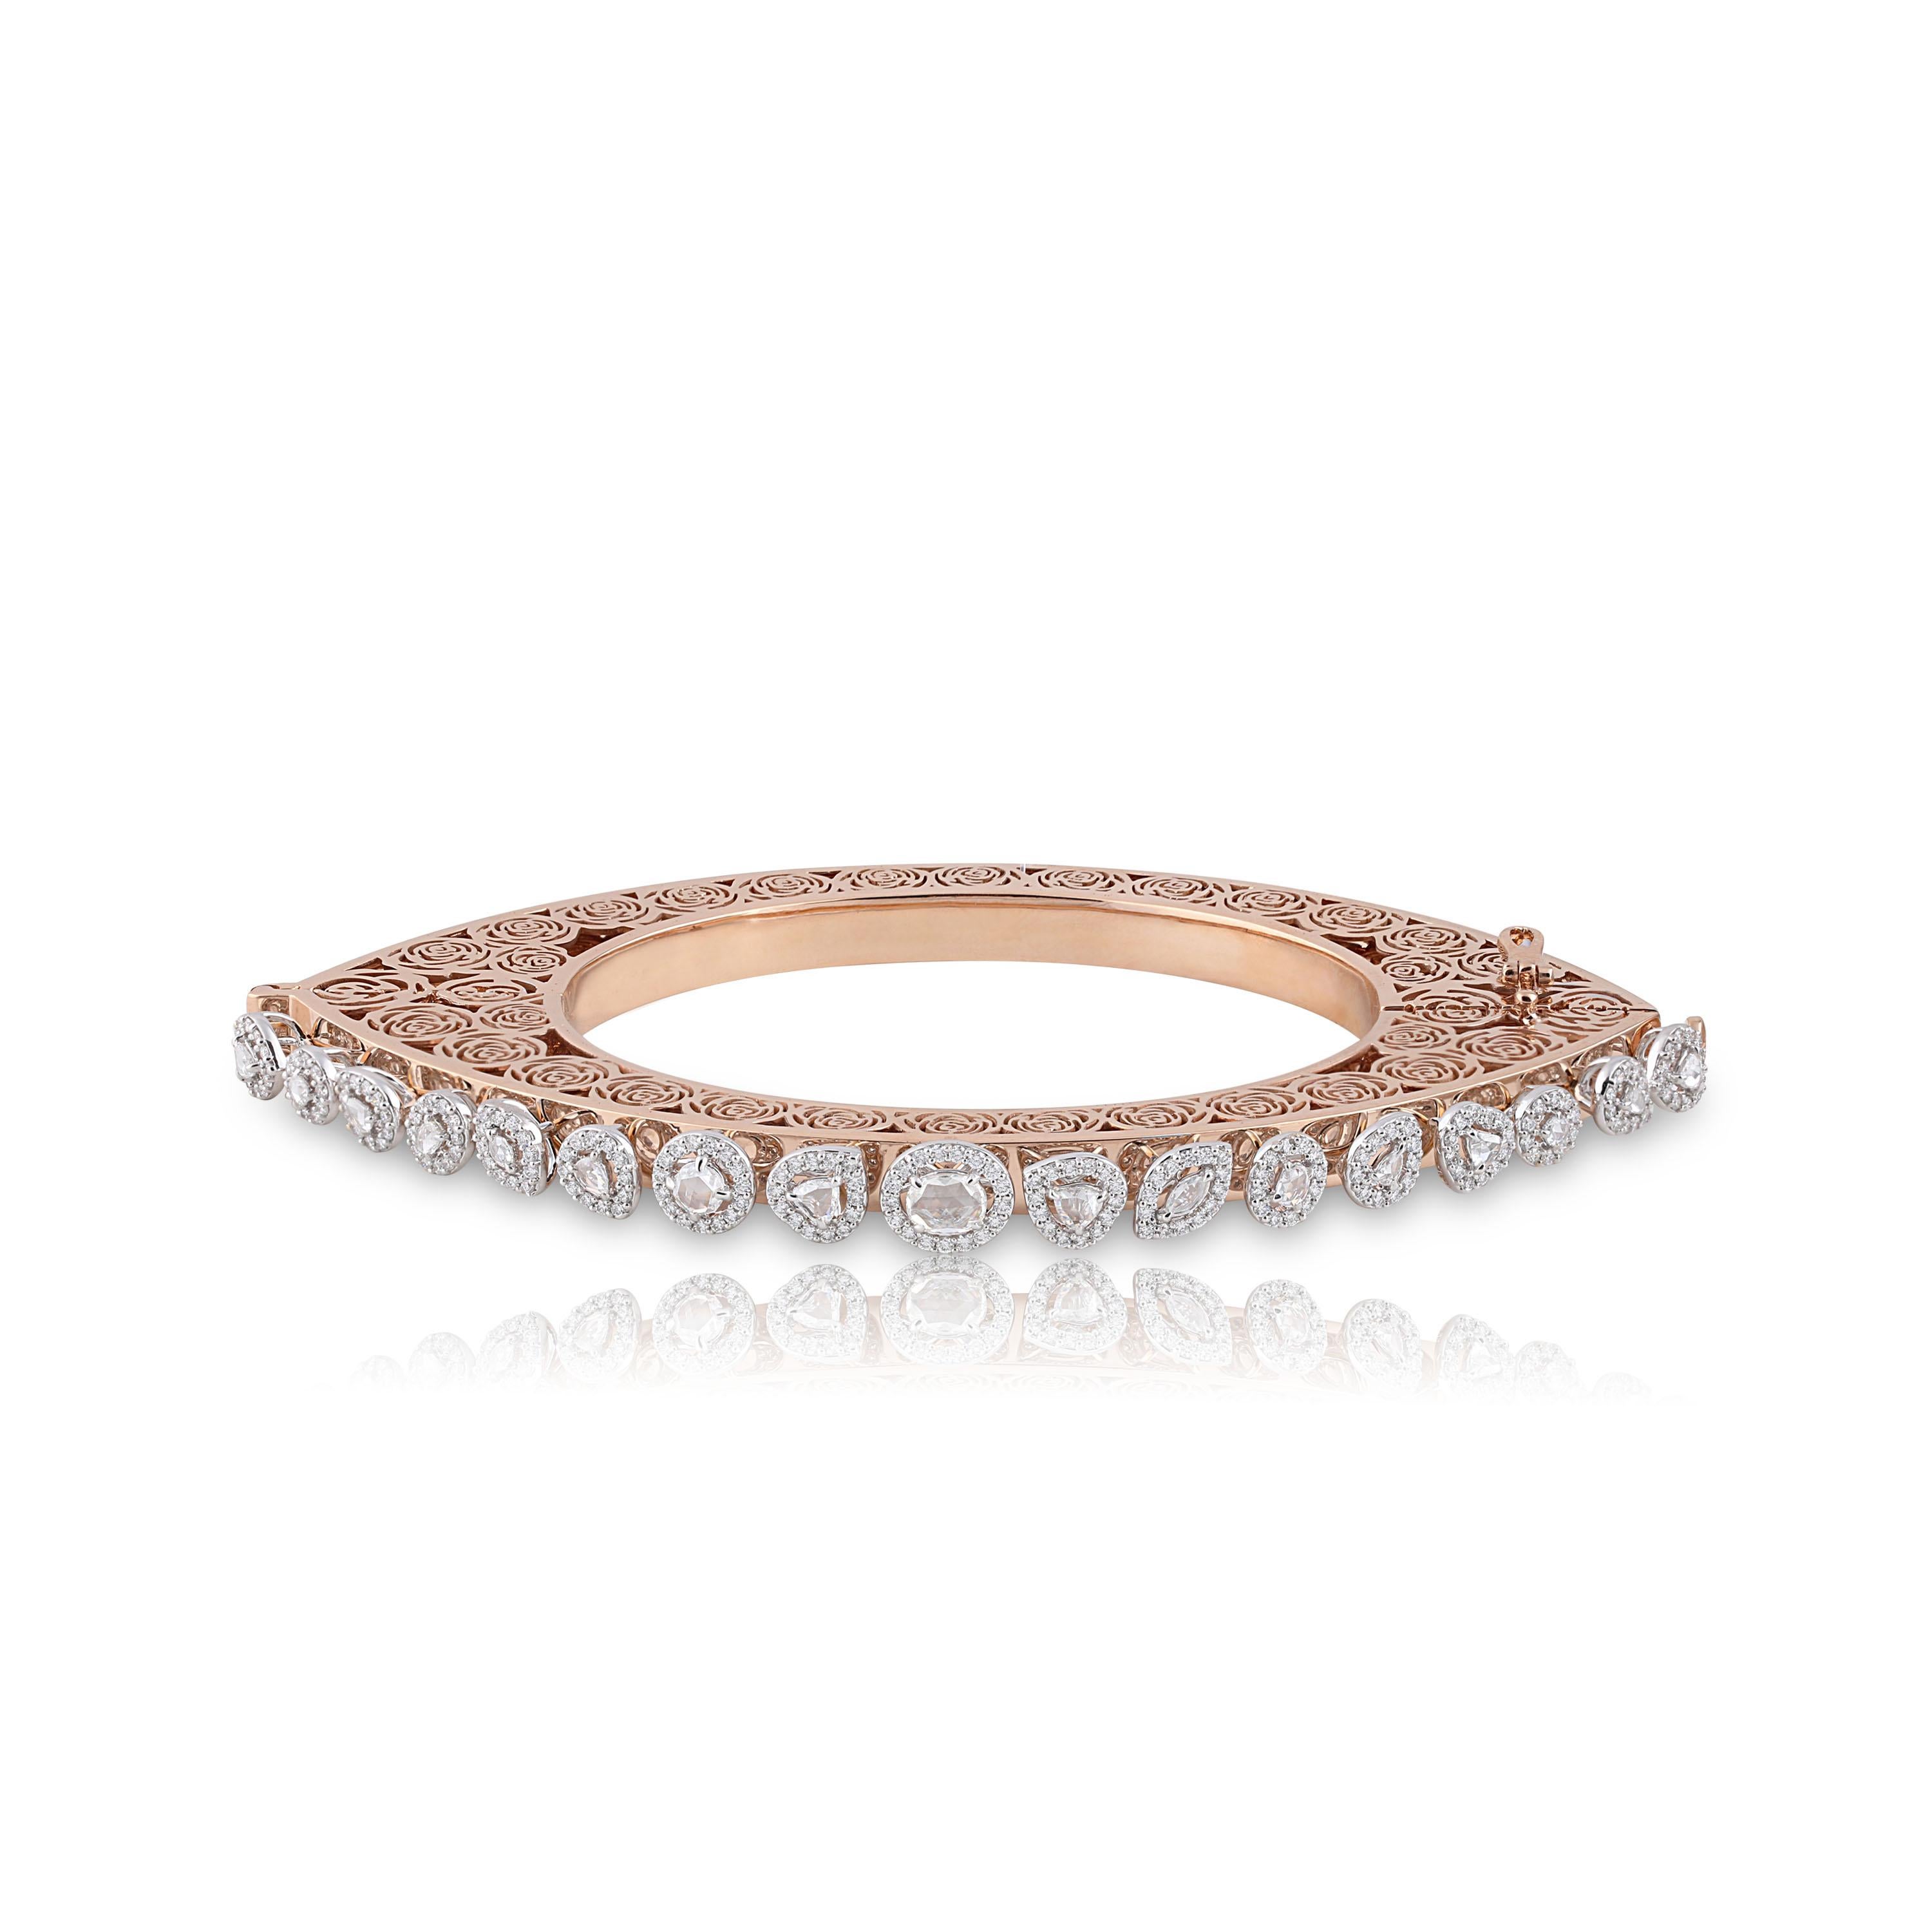 Studio Rêves Diamonds and Filigree Bracelet in 18 Karat Gold For Sale 2